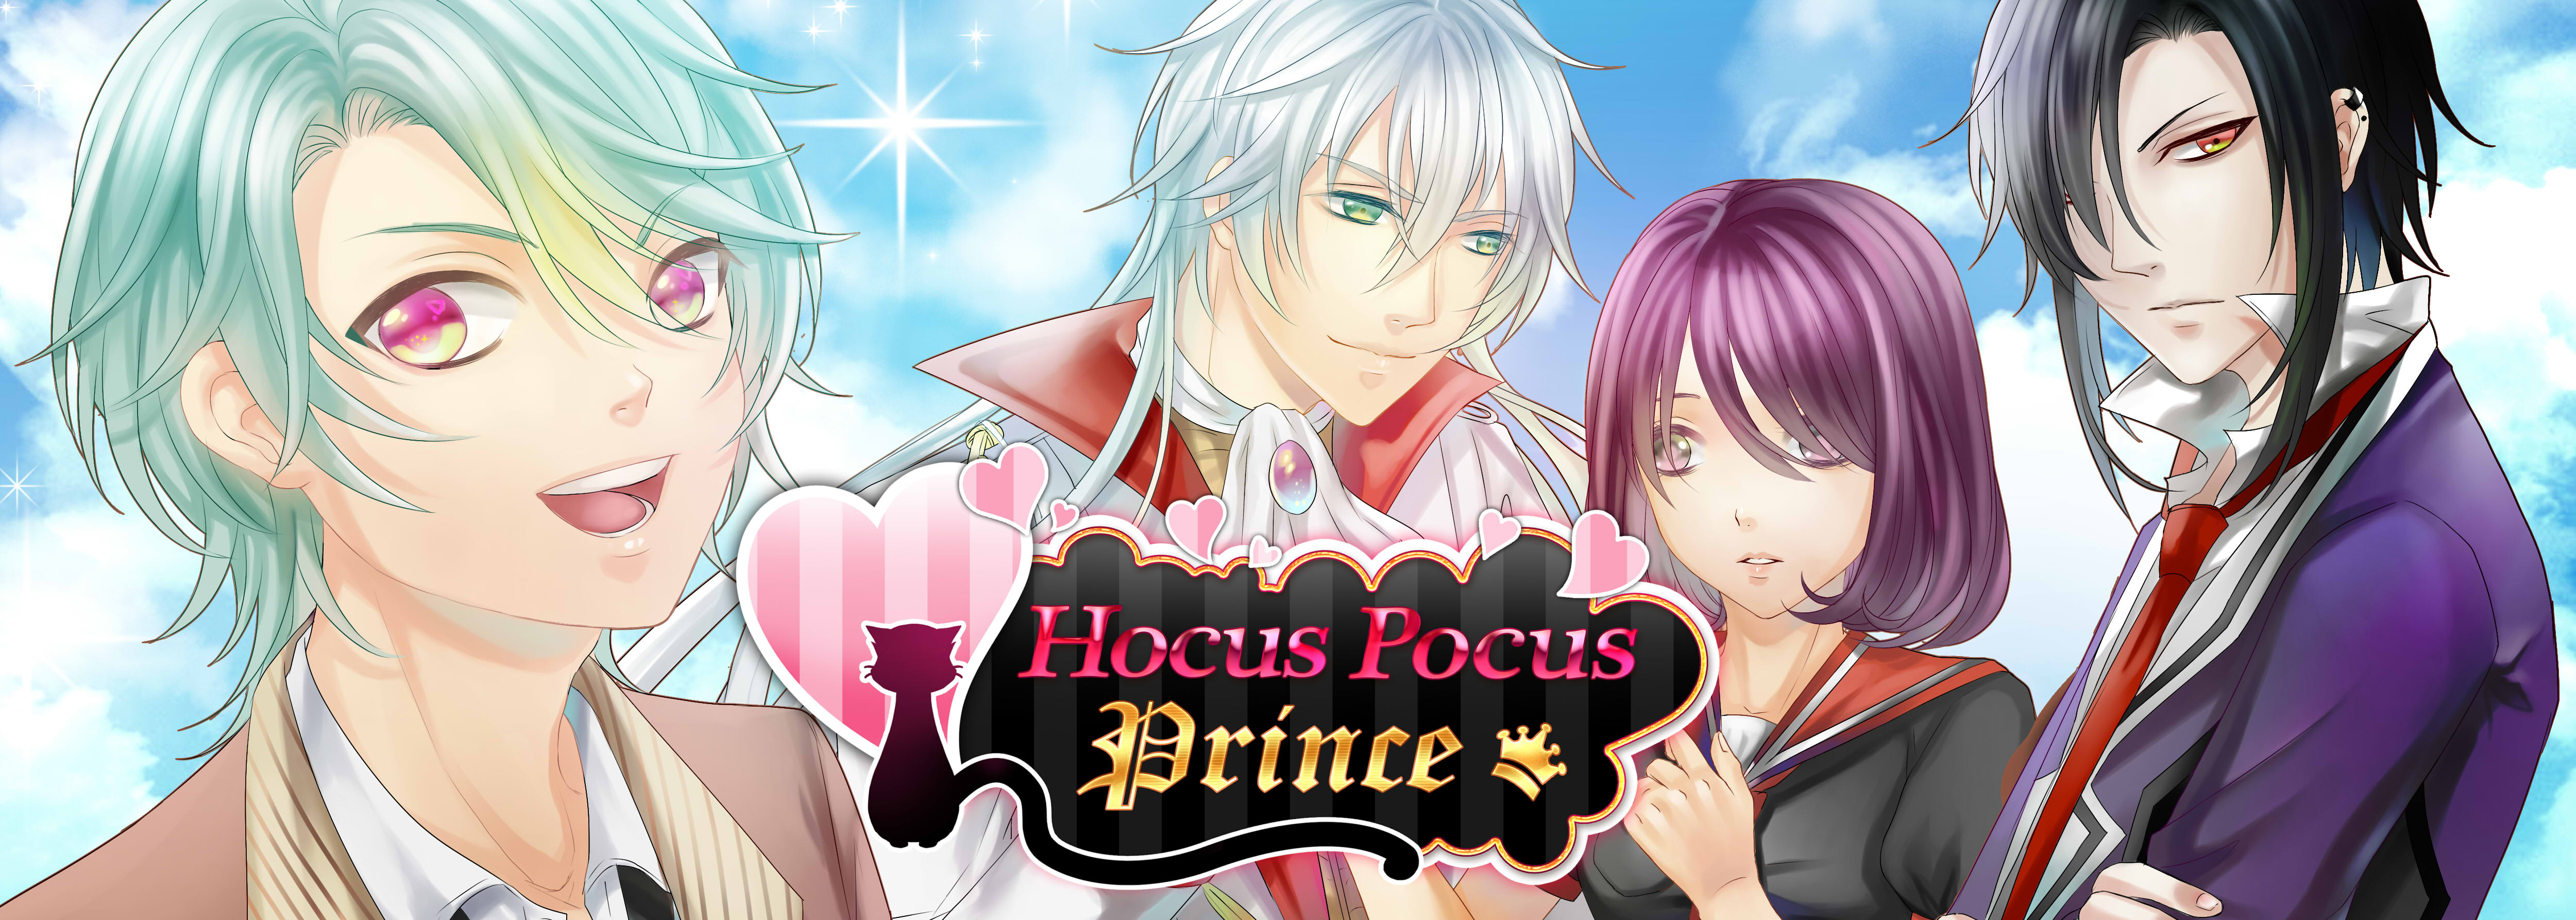 Hocus Pocus Prince